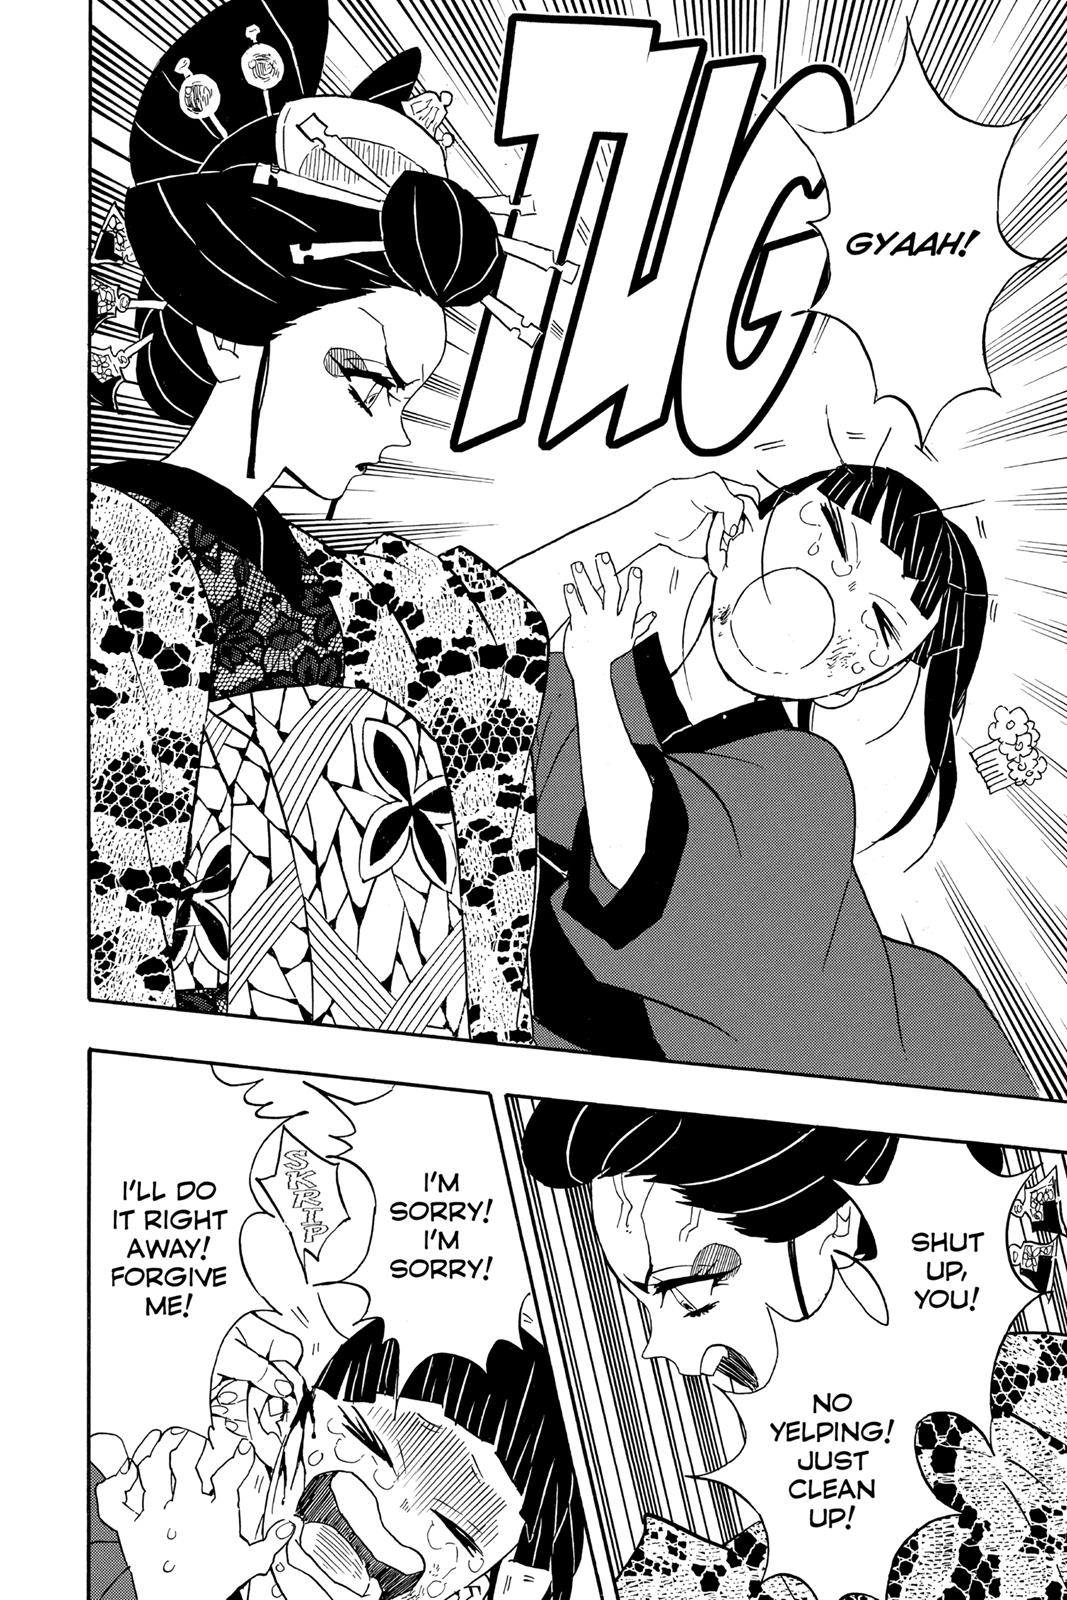 Demon Slayer Manga Manga Chapter - 73 - image 17